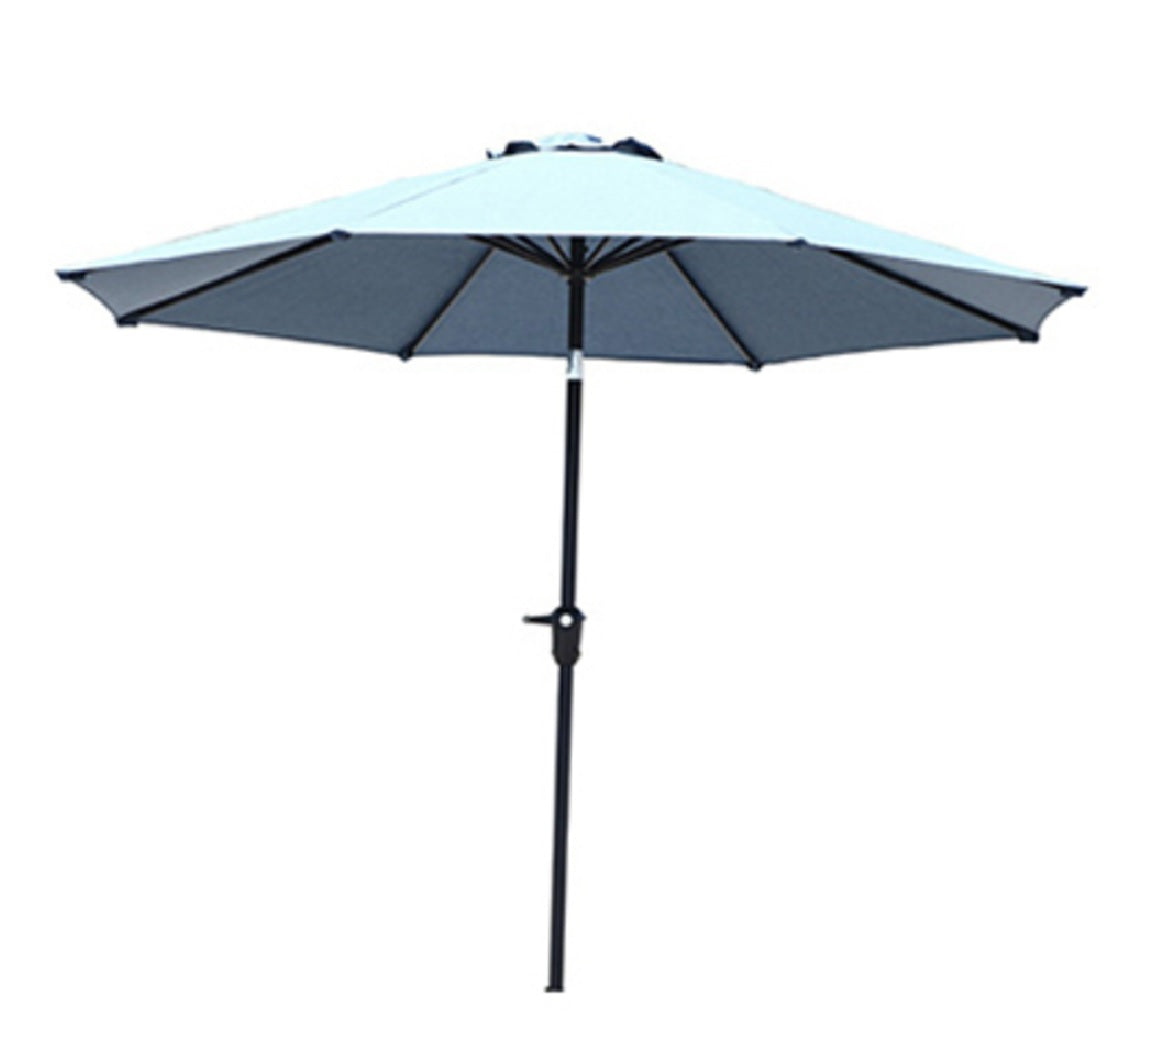 Four Seasons Courtyard 860.0290.001 Adelaide Round Market Umbrella, 9 Feet